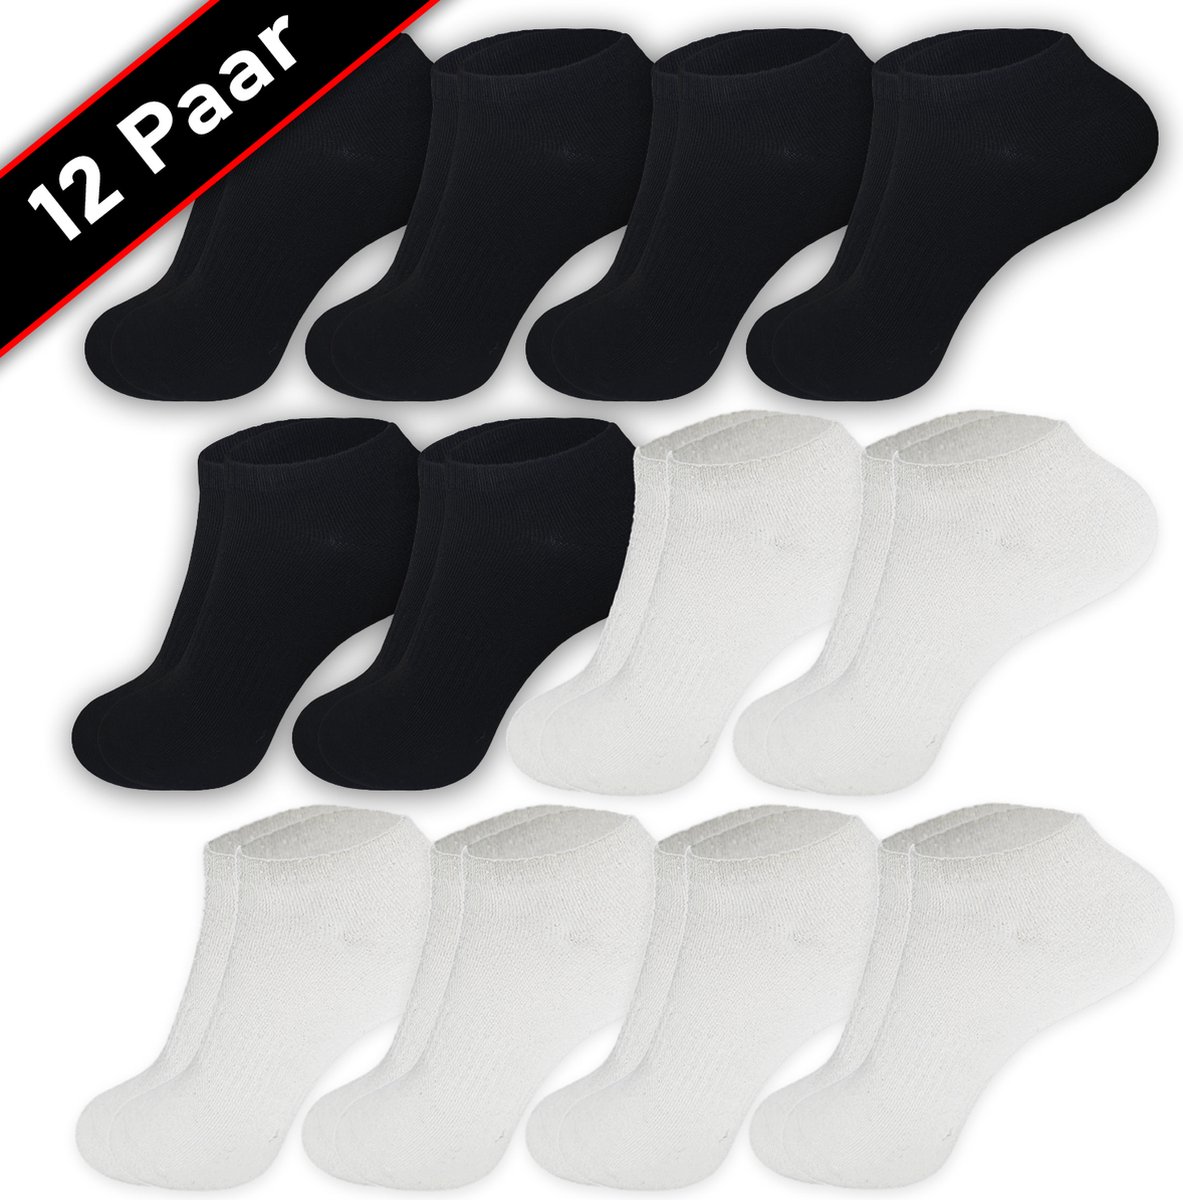 Blacktag - Enkelsokken - Sokken - Sneakersokken - Maat 36/40 - 12 Paar - Zwart- Wit - Katoen